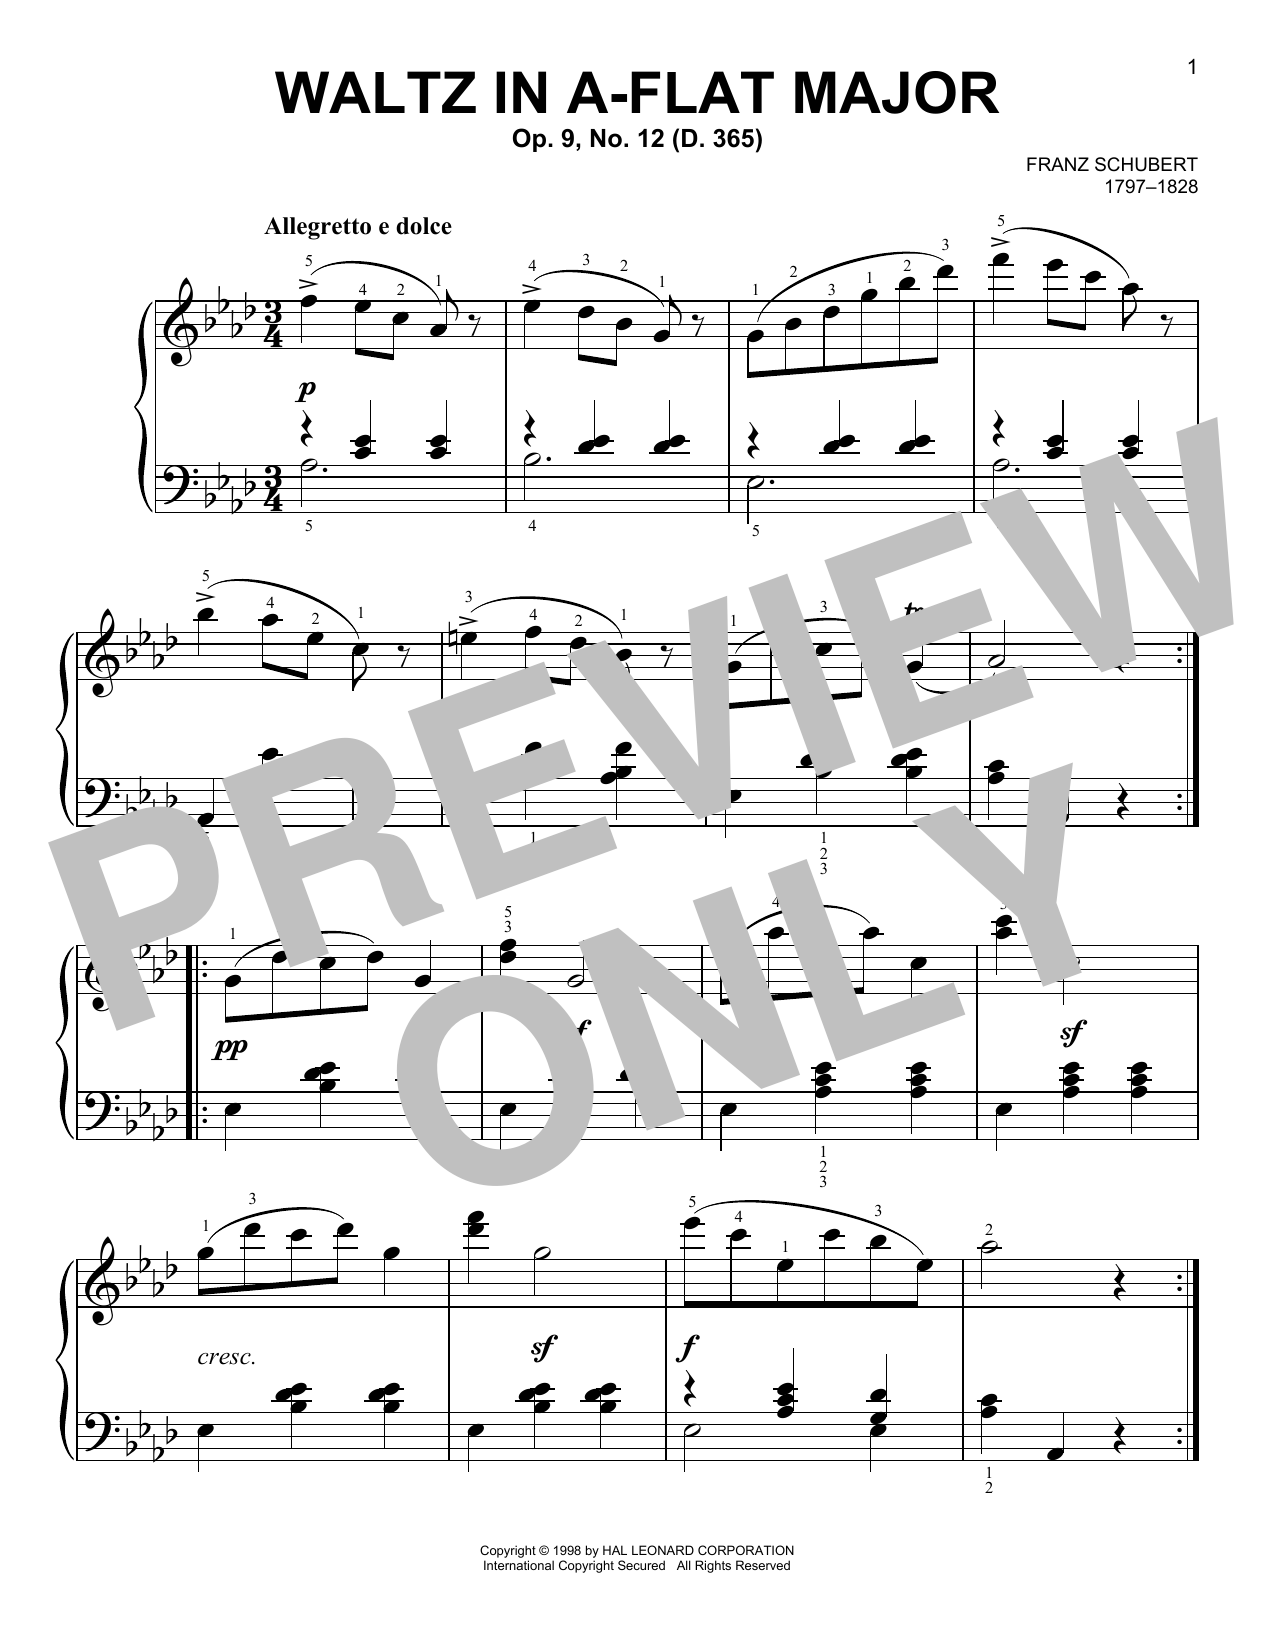 Download Franz Schubert Waltz In A-Flat Major, Op. 9, No. 12 Sheet Music